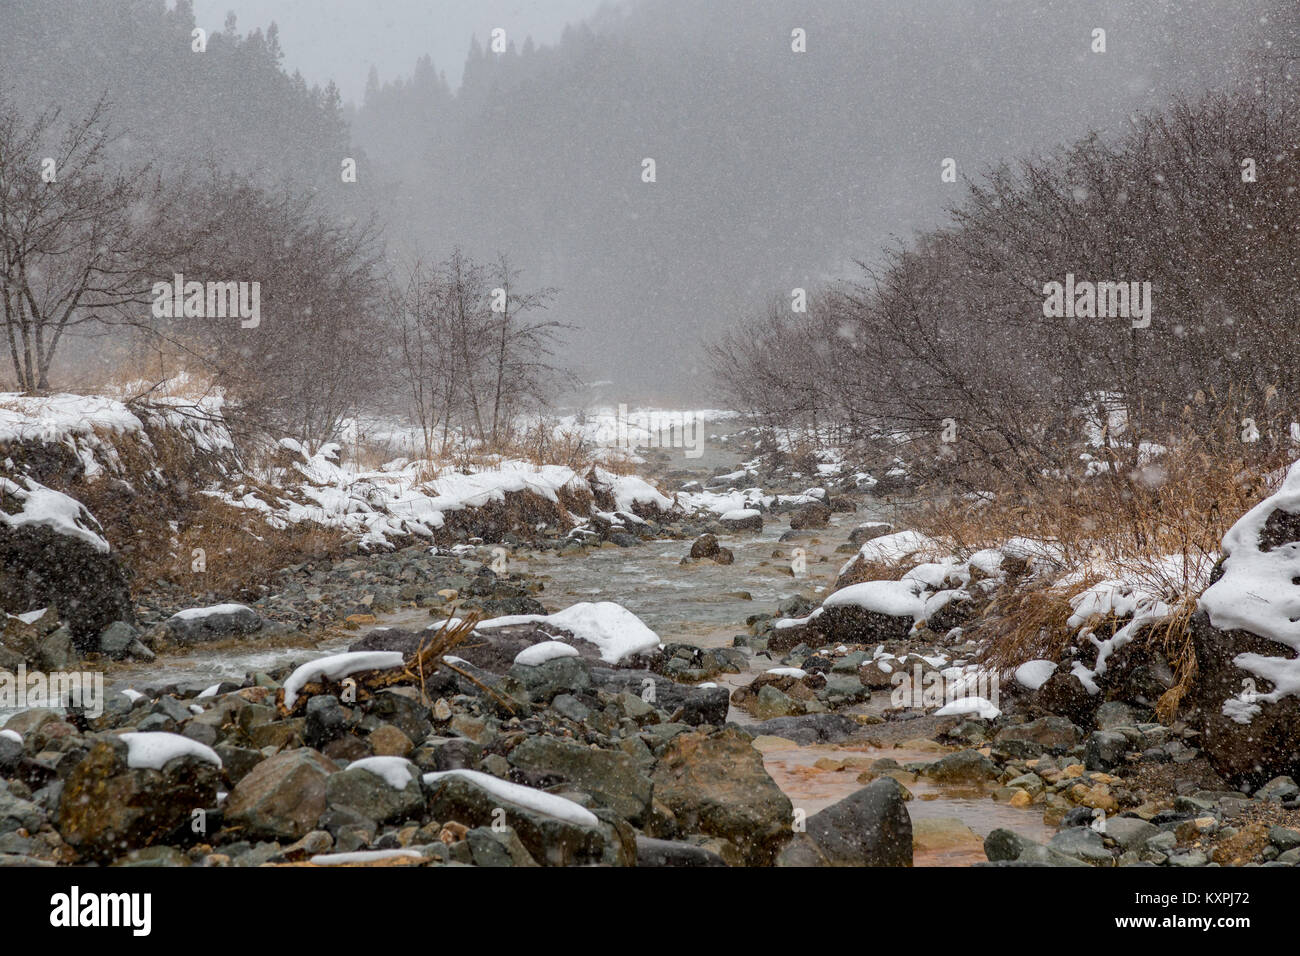 La Yokoku río fluye a través de la montaña de rocas. El río es alimentado por aguas termales en las montañas, por lo que permanece caliente incluso en el frío del invierno Foto de stock